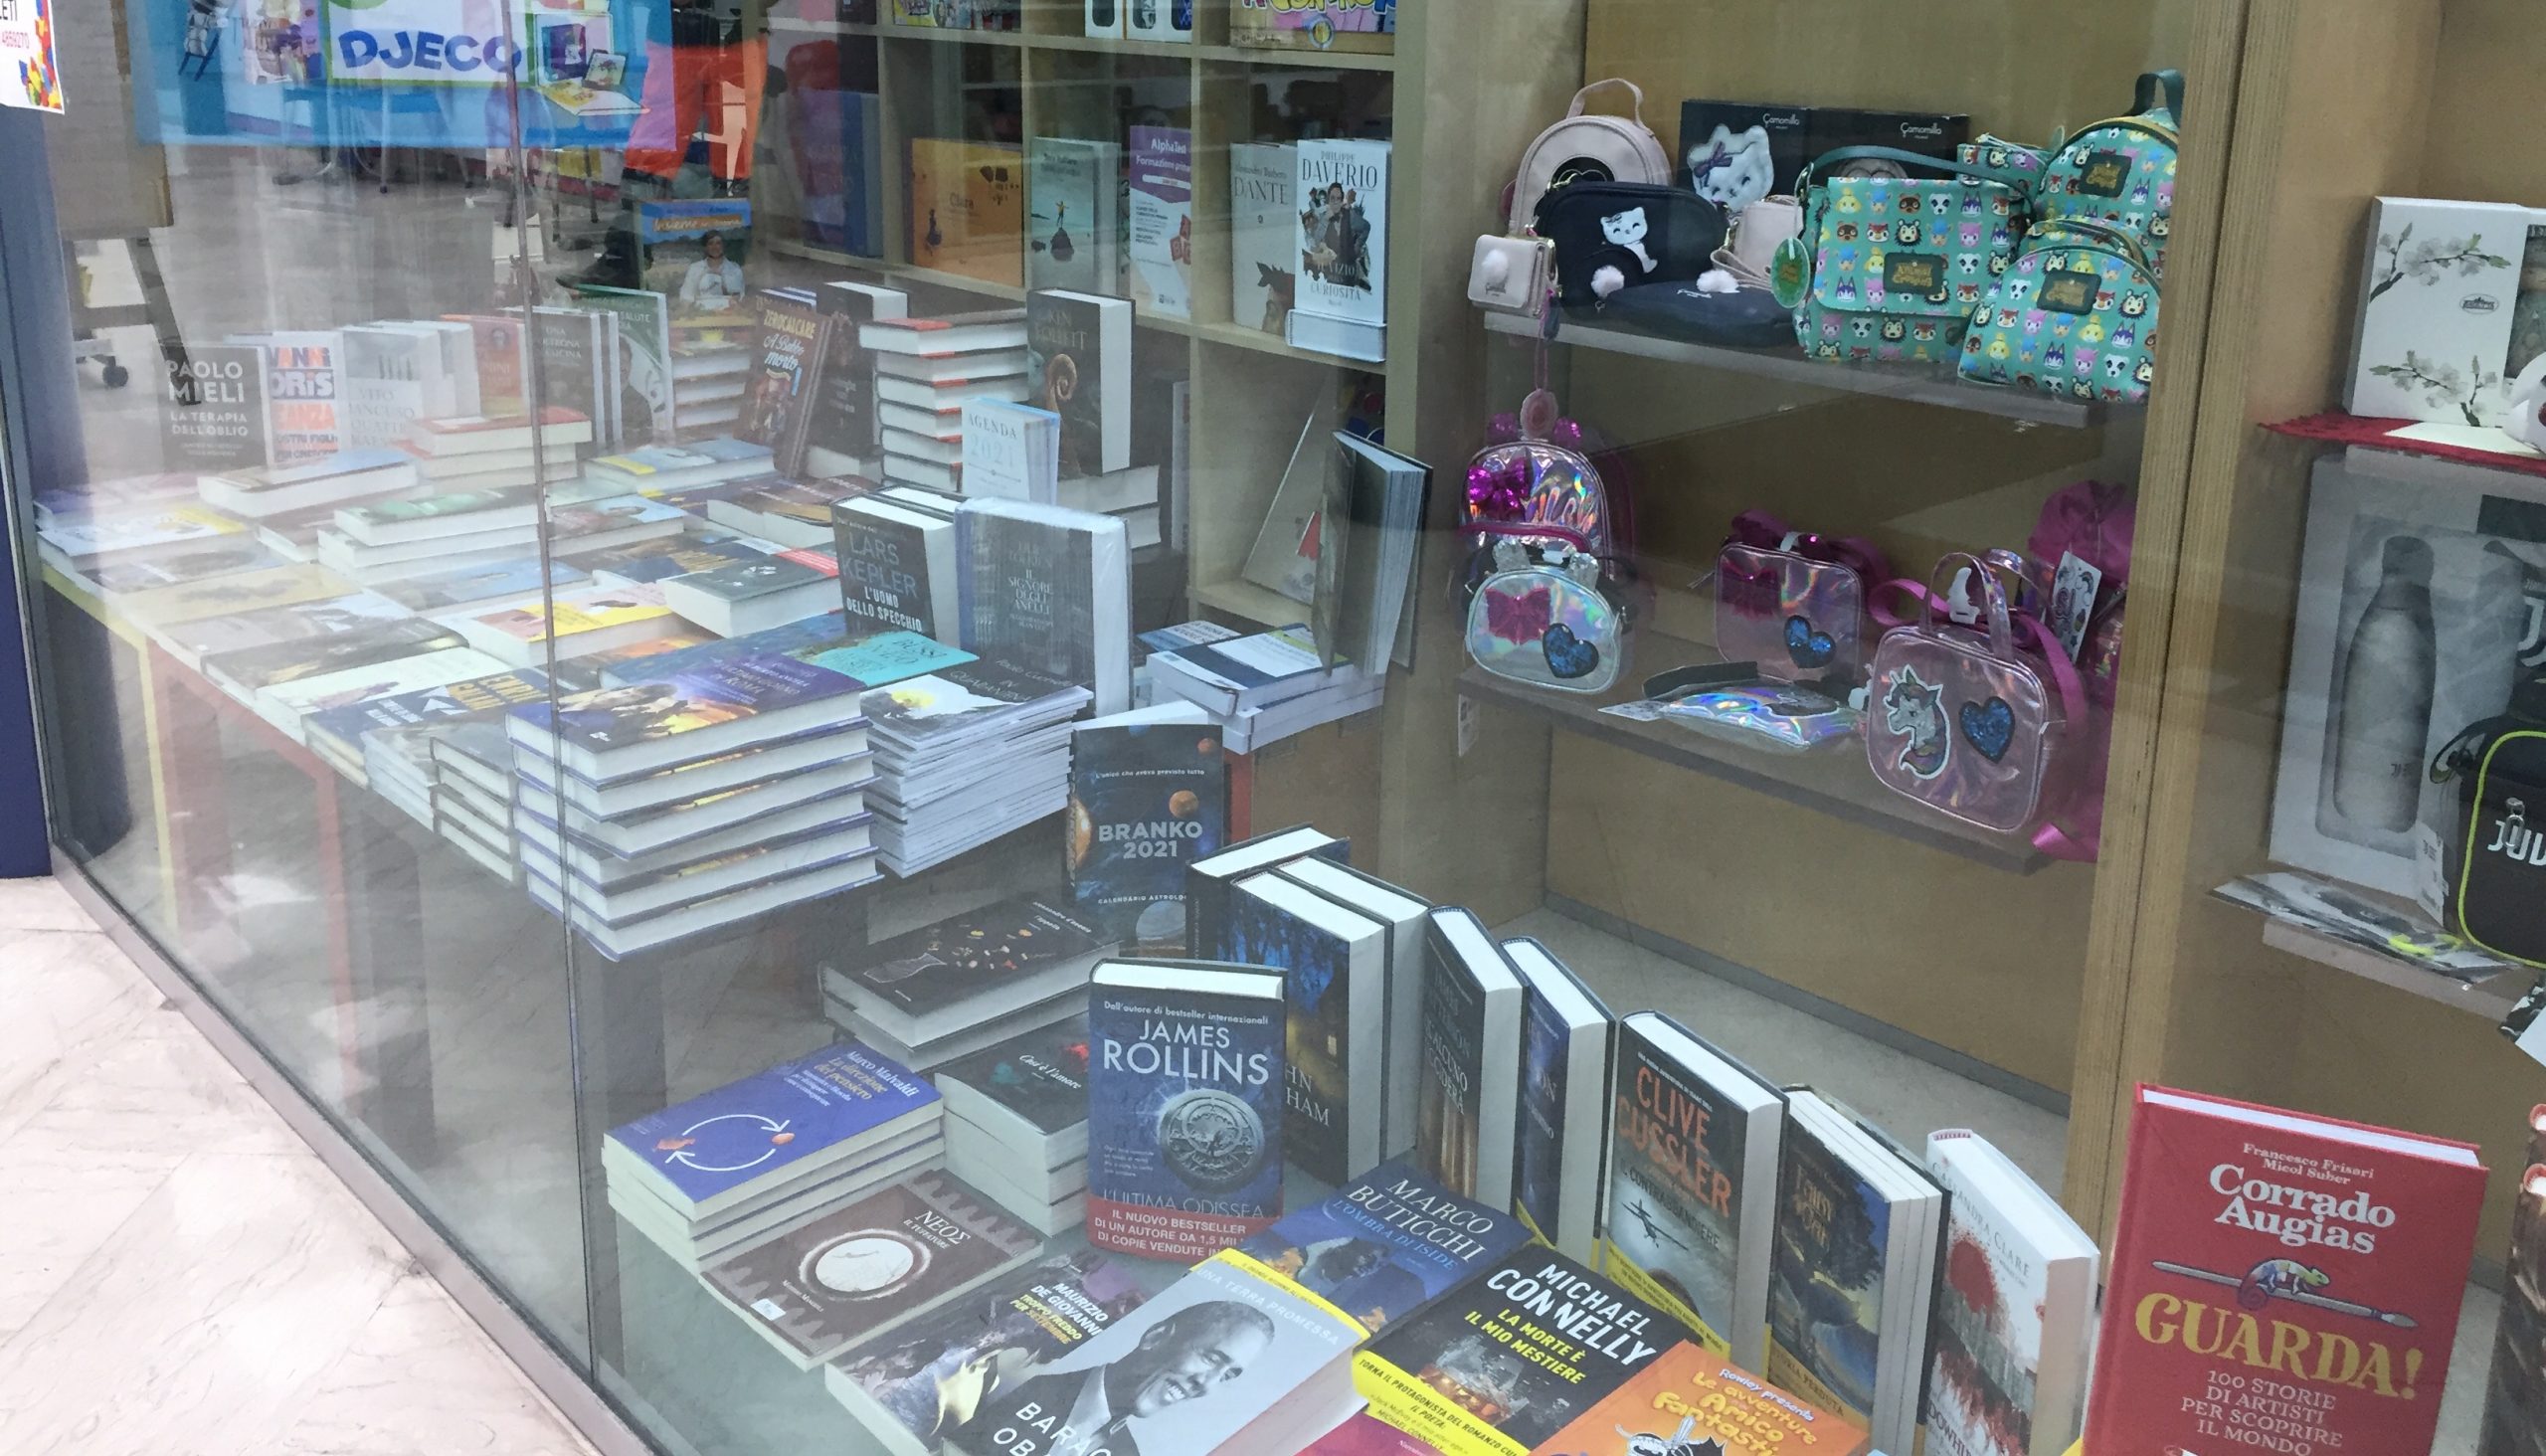 Librerie, “isole felici” di una piccola economia che resiste